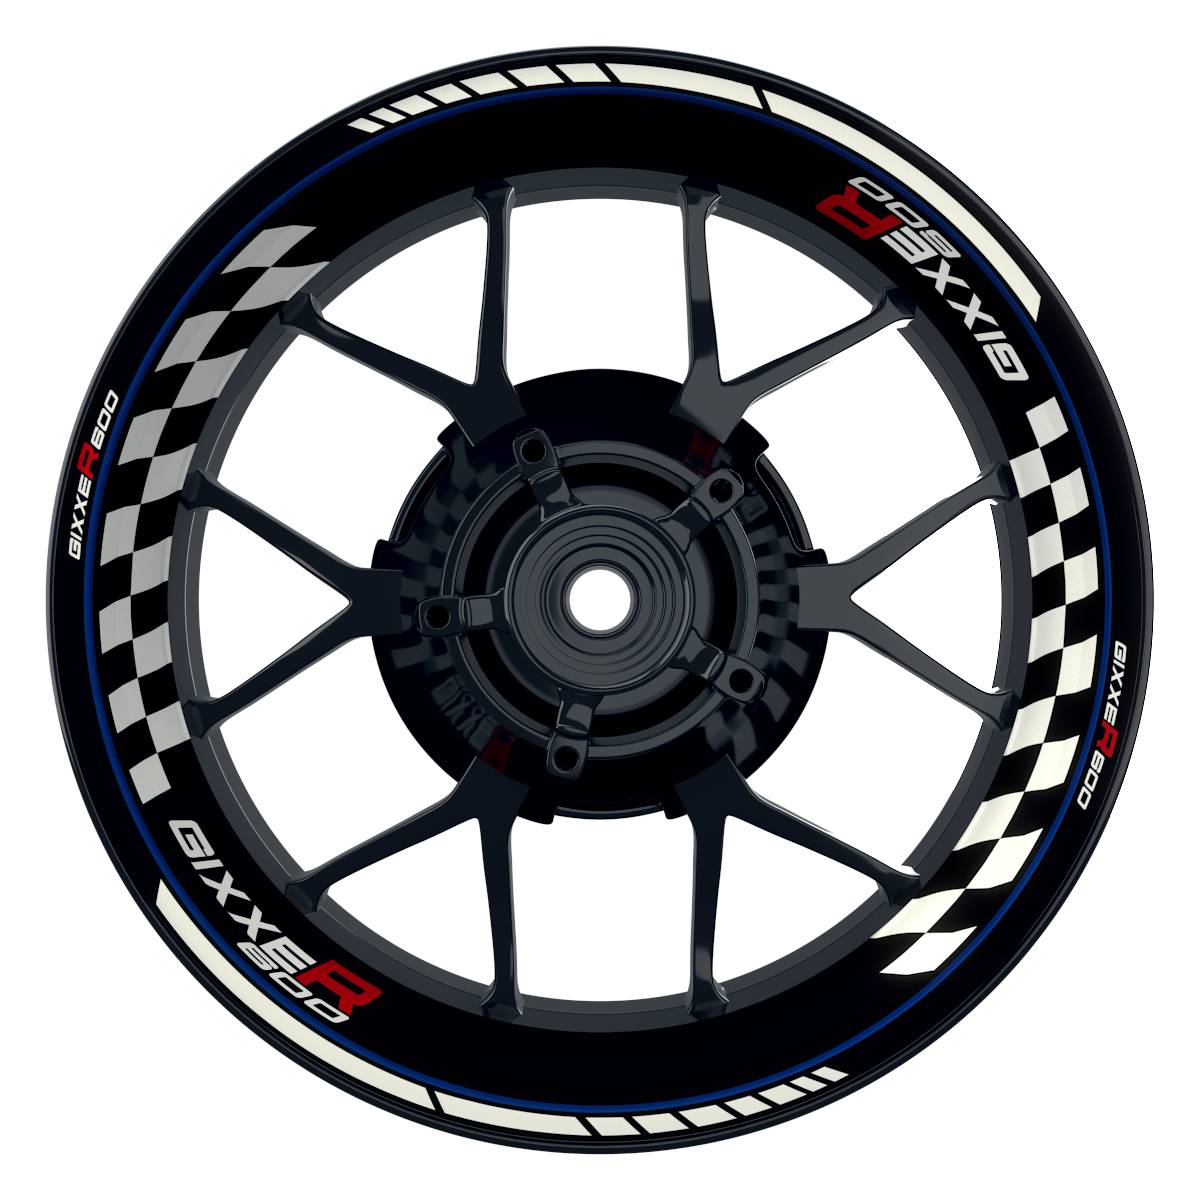 GIXXER600 Grid schwarz blau Wheelsticker Felgenaufkleber